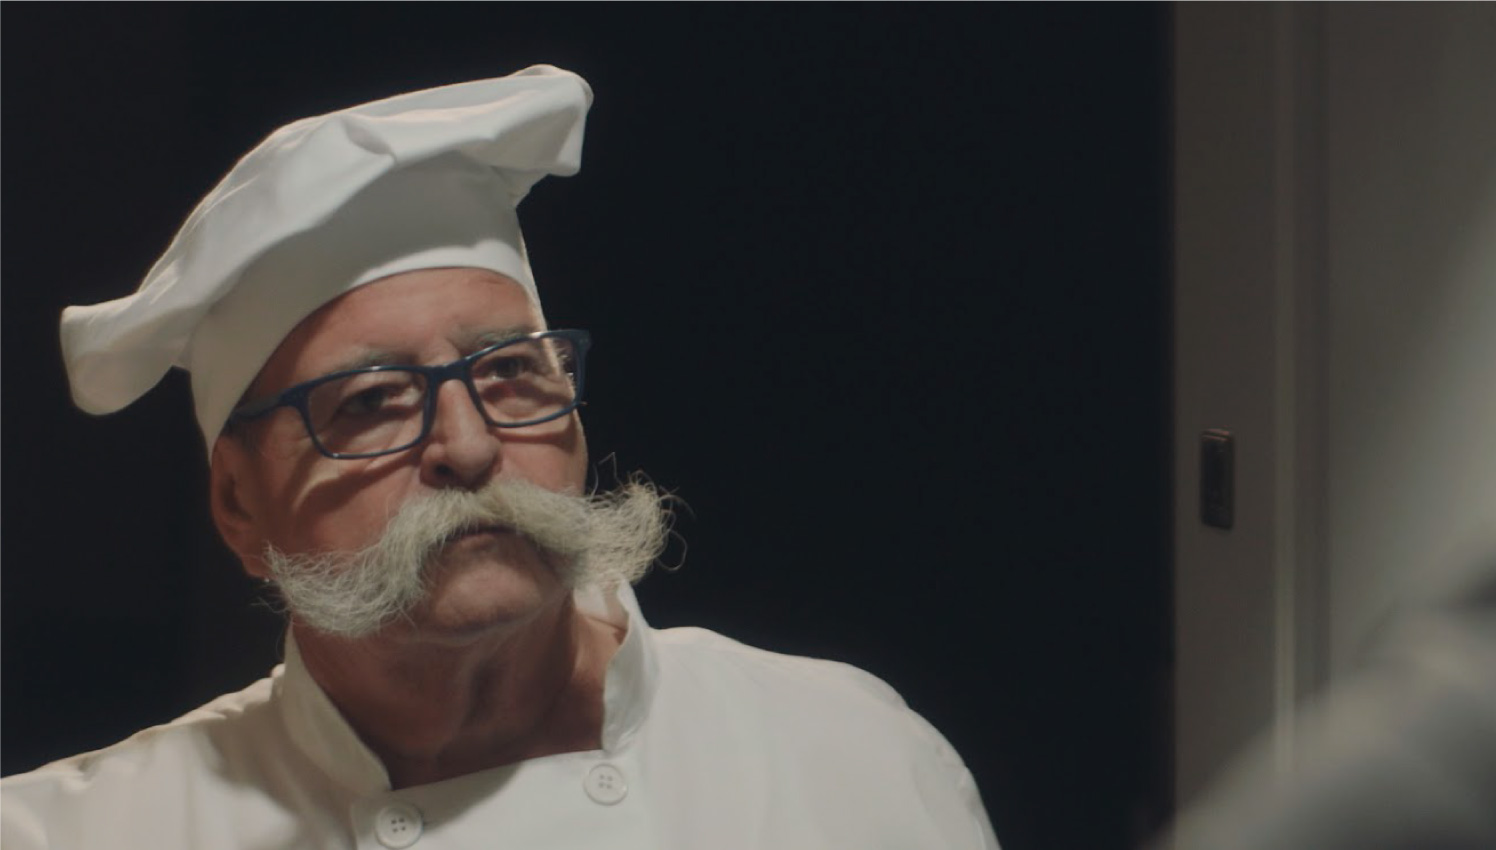 Un chef con sombrero de cocinero, bigote blanco y grande, observa con seriedad